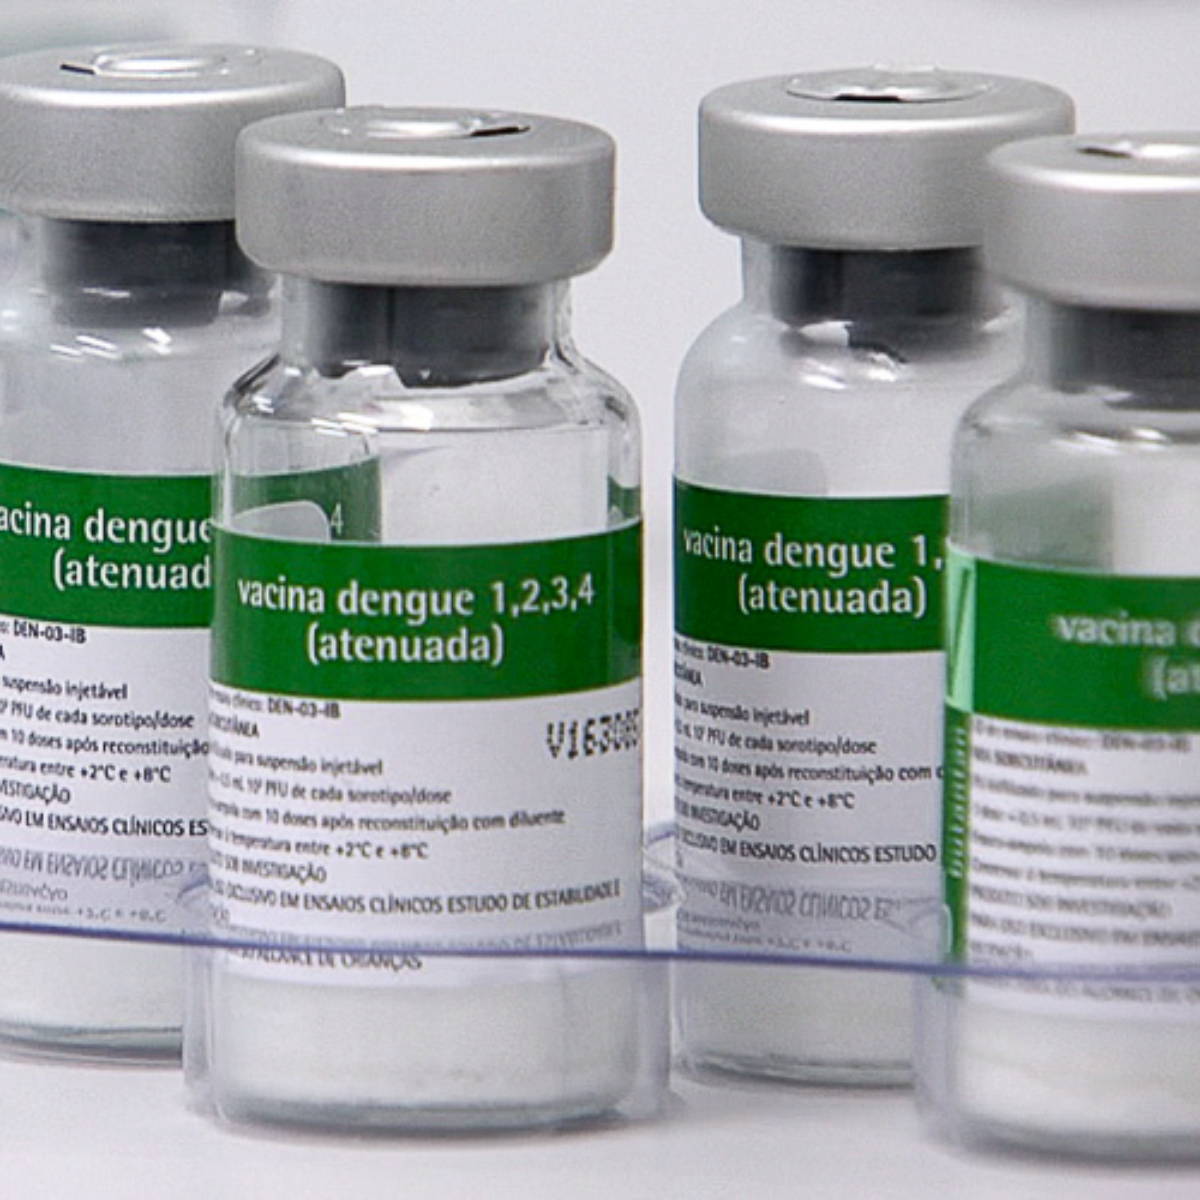  vacina dengue sus 